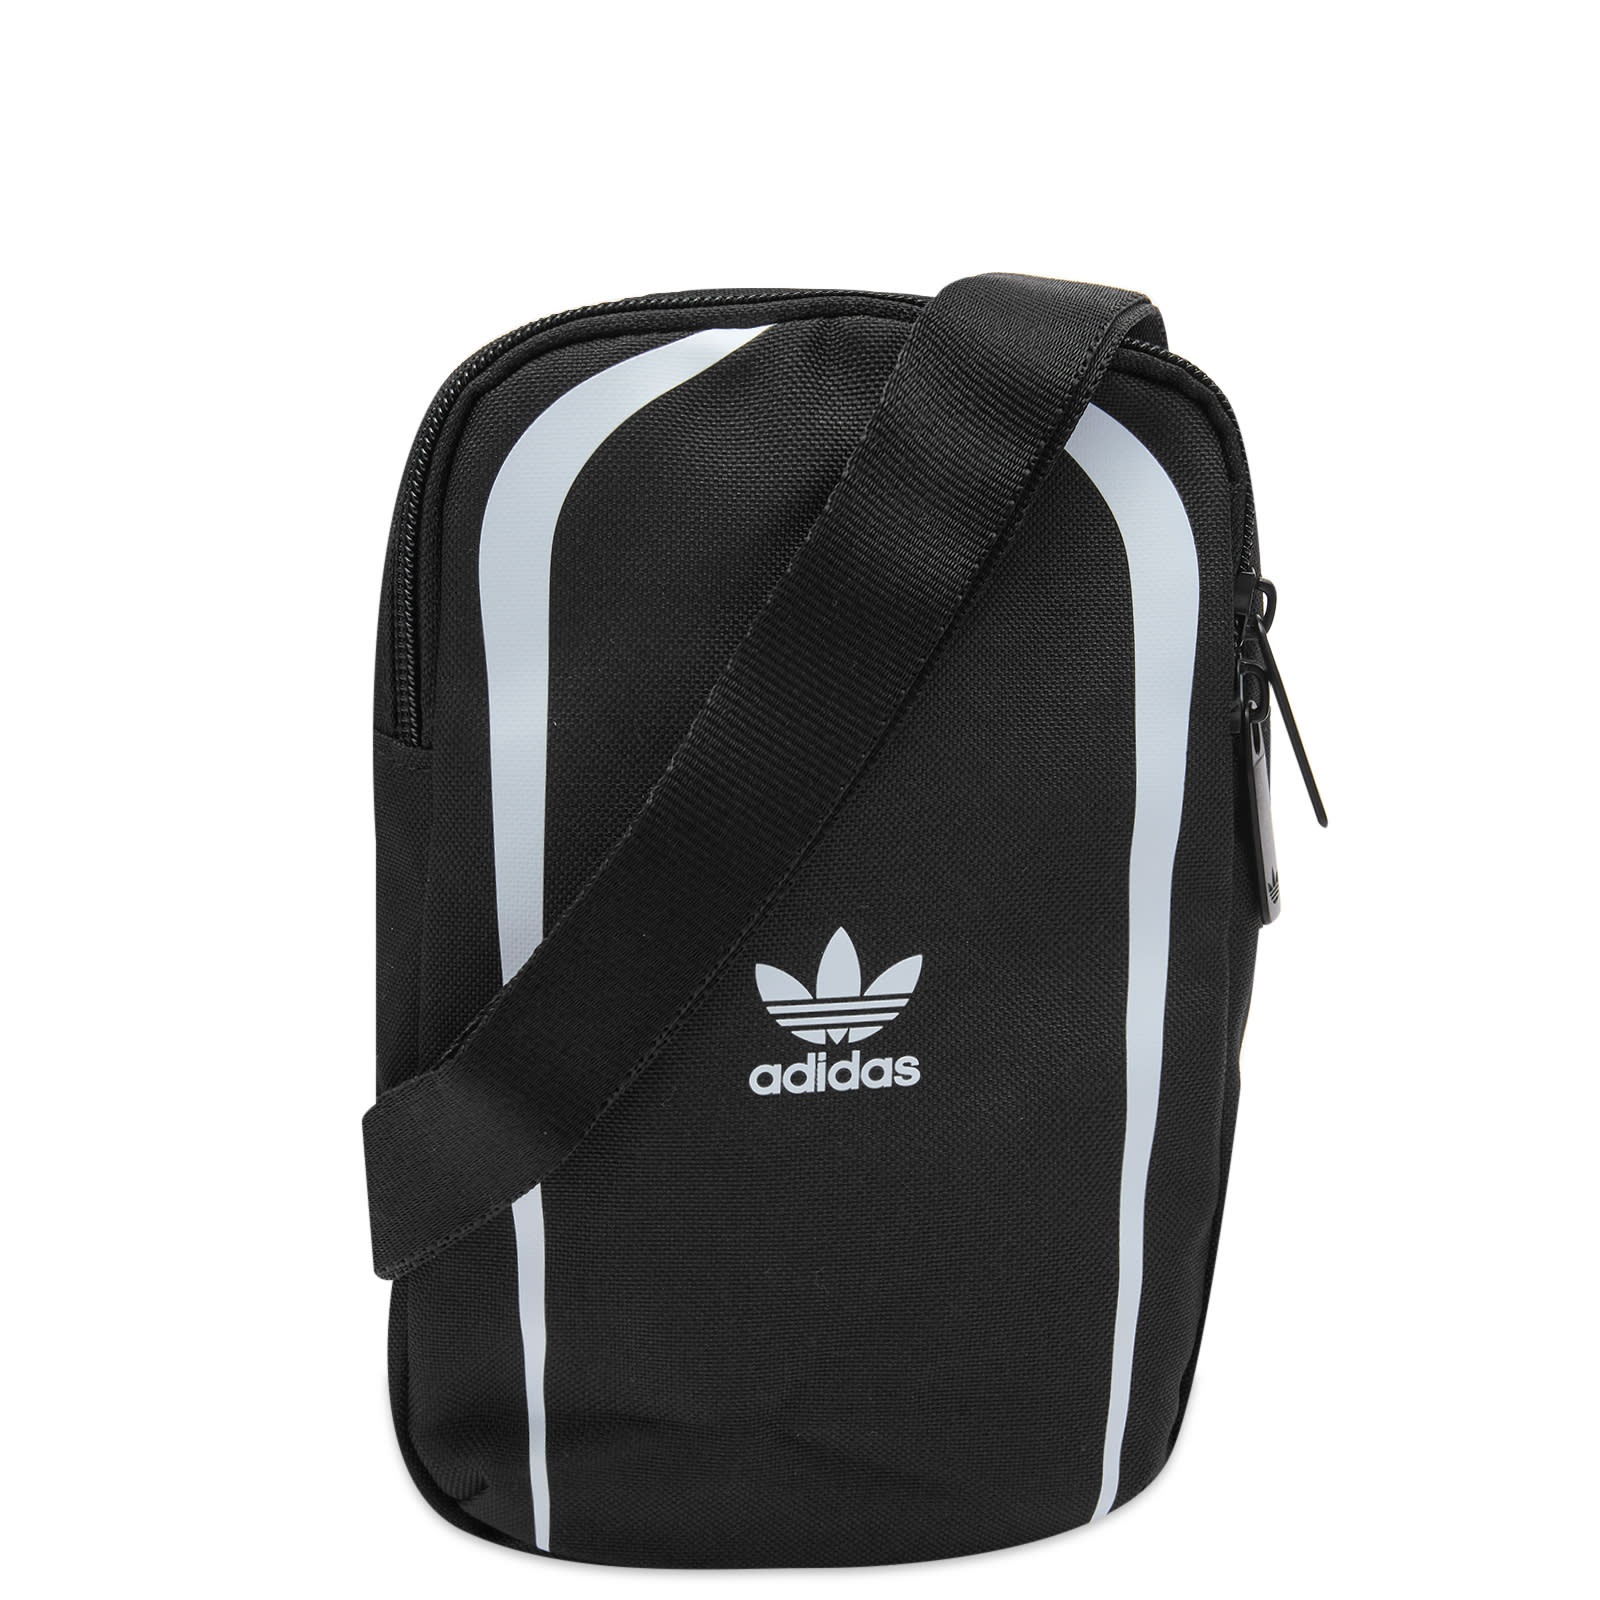 Adidas Retro Small Item Bag - 1